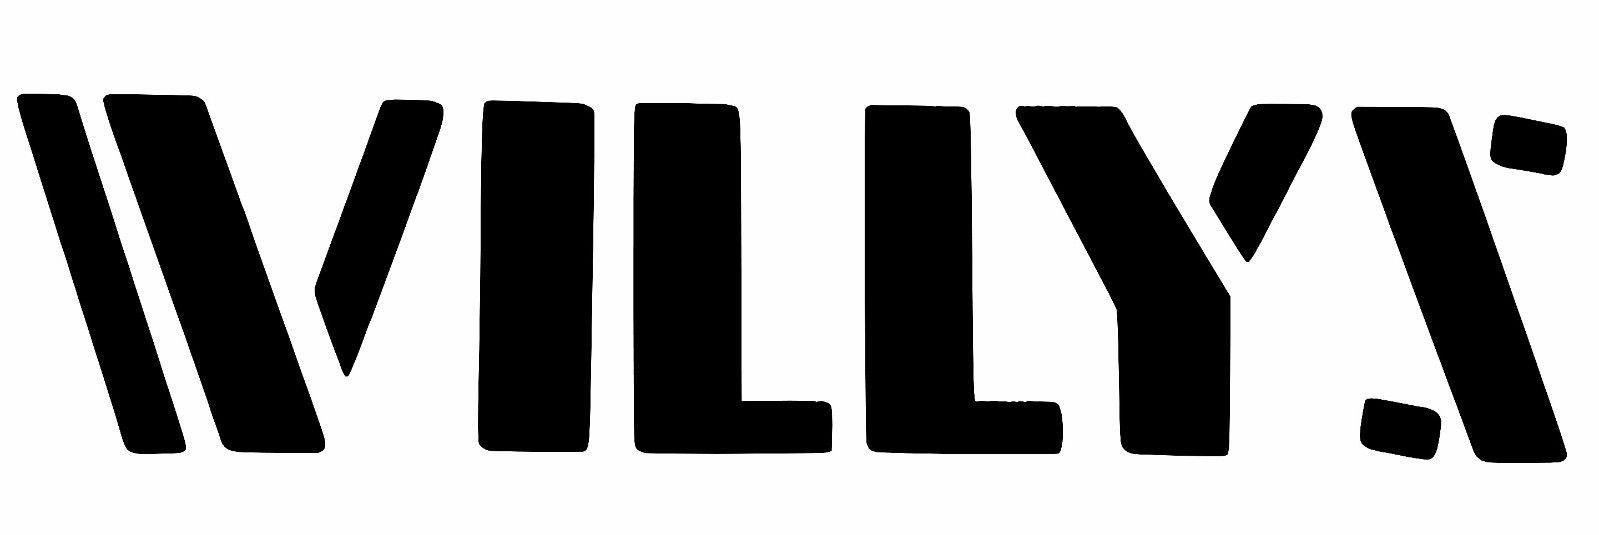 Willys Jeep Logo - Willys jeep Logos